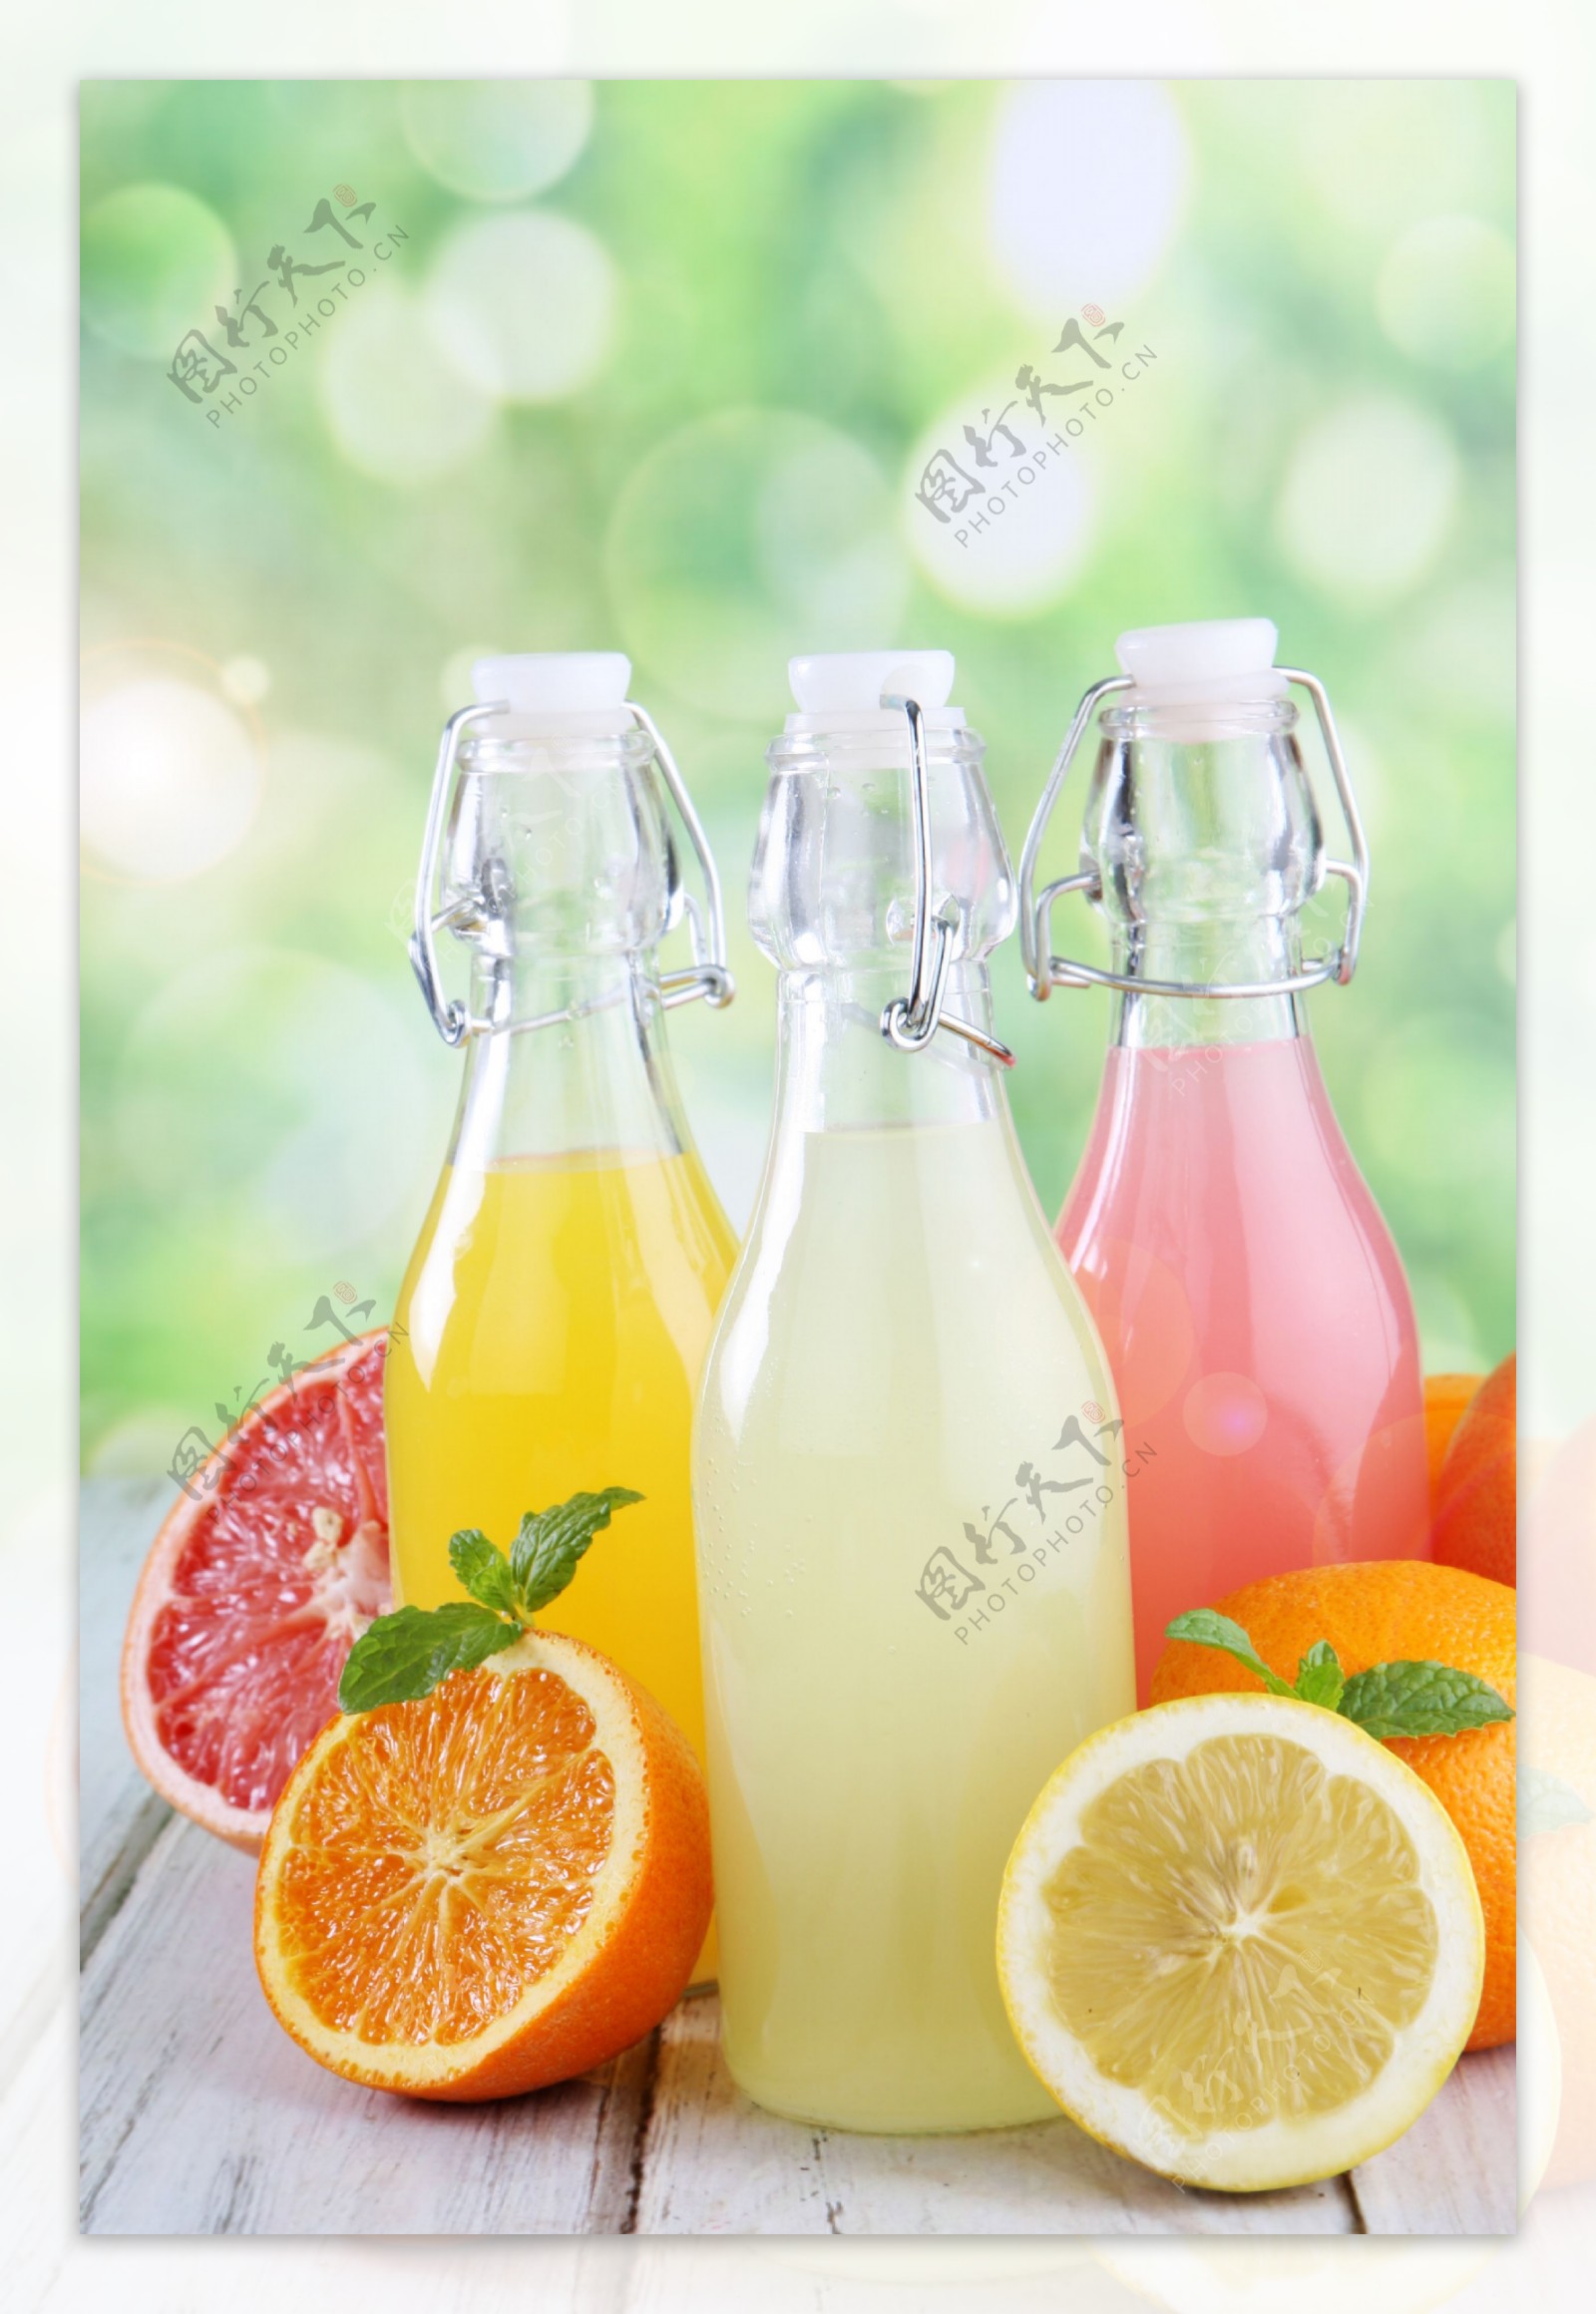 瓶装果汁与柠檬图片